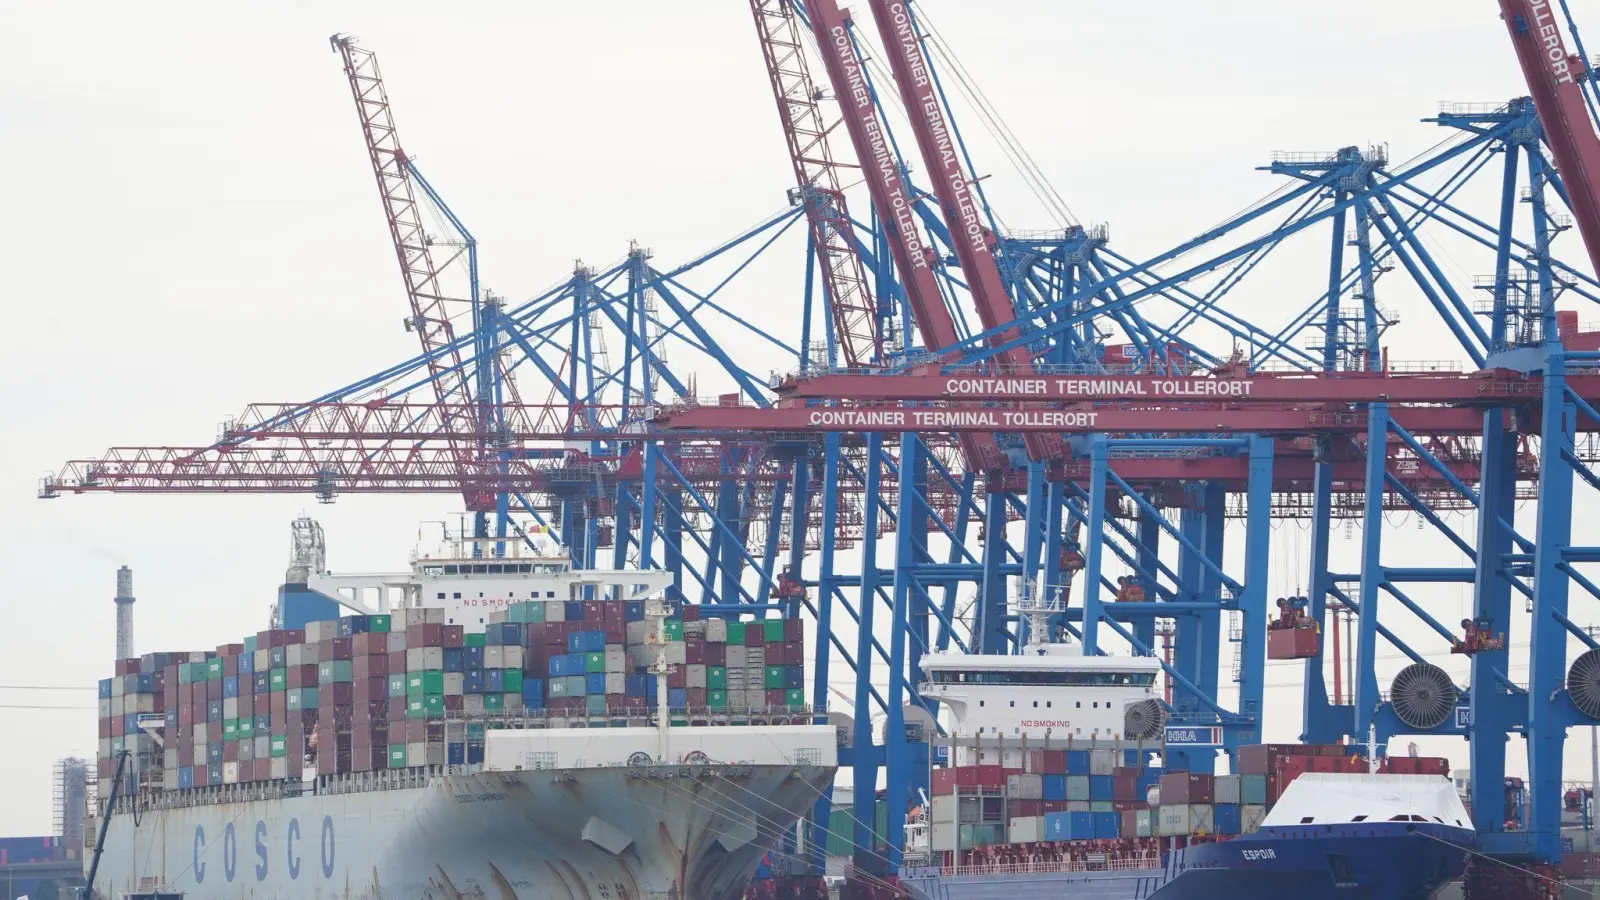 Obwohl sechs Ministerien davon abraten, plant das Bundeskanzleramt offenbar, den Verkauf von Anteilen des Hamburger Hafenbetreibers HHLA an die chinesische Reederei Cosco durchzusetzen. (Foto: Marcus Brandt/dpa)